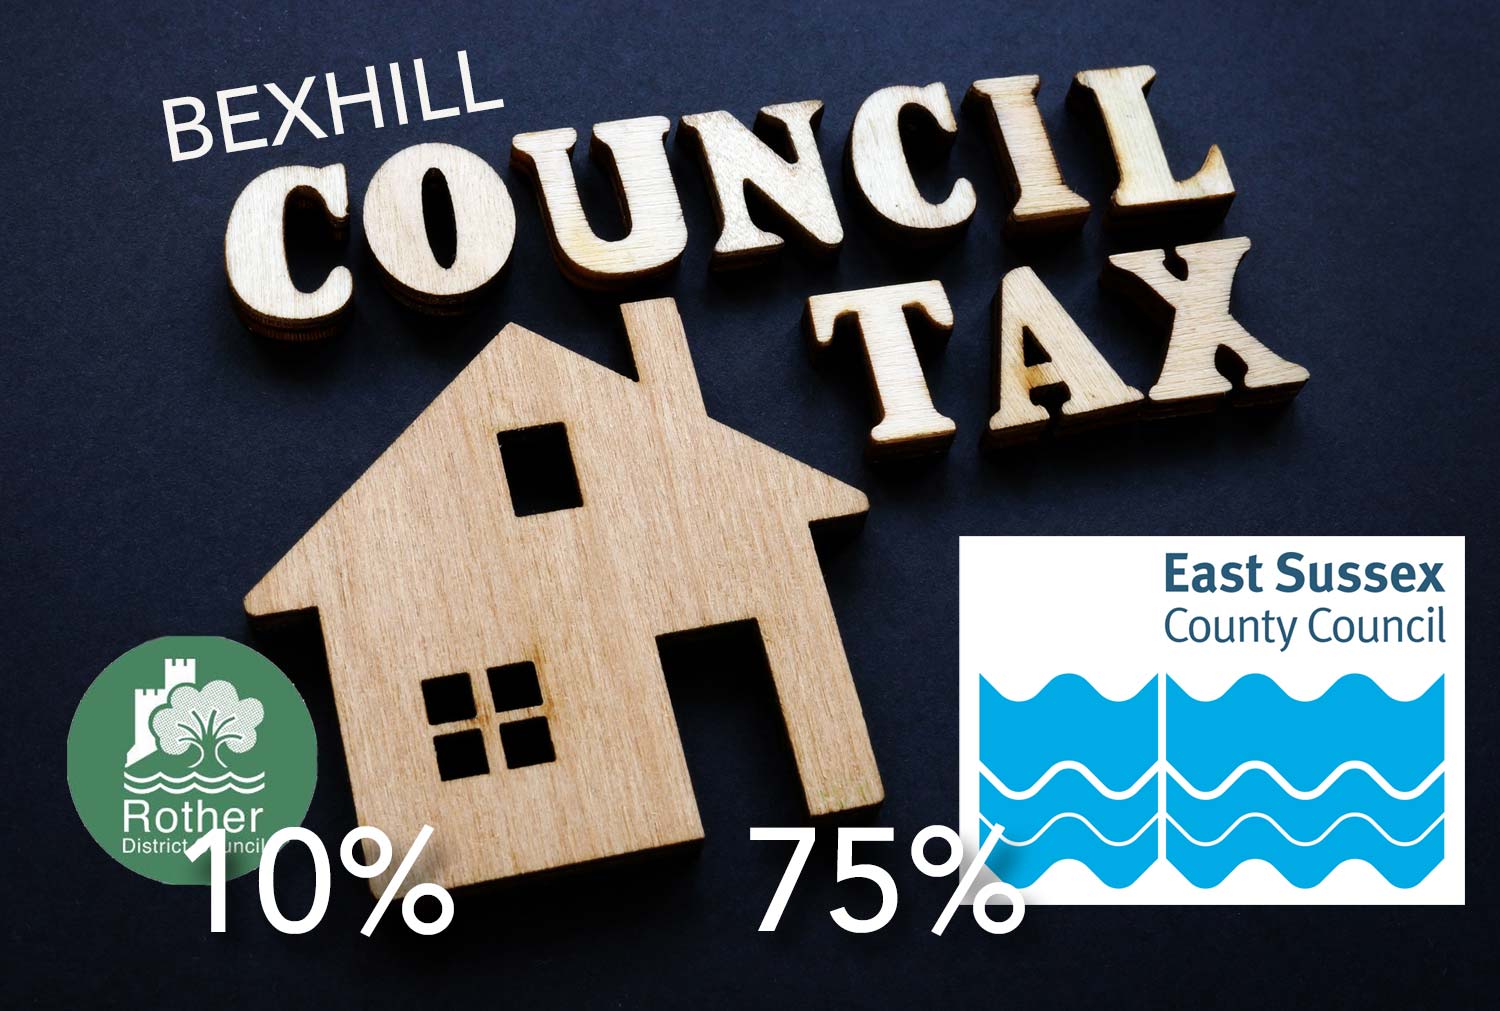 RDC and ESCC logos - council tax